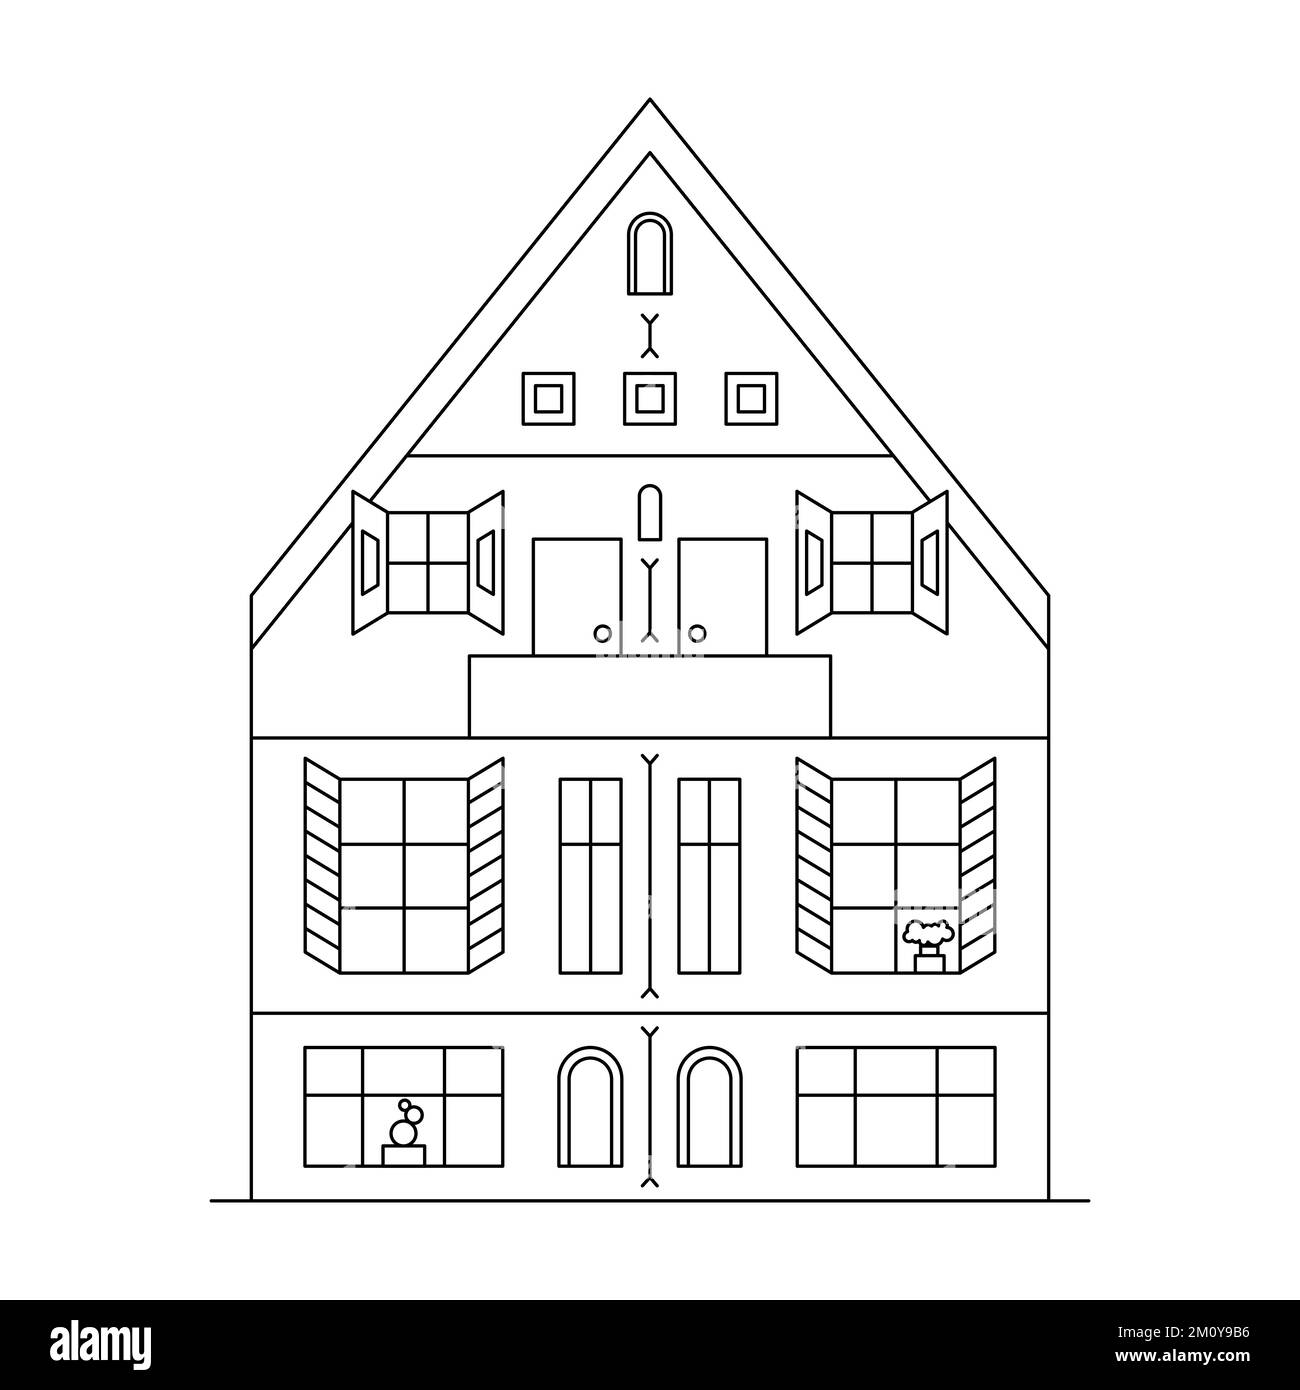 Strichkunst-Vektorgrafik mit einem Haus. Stadtbild mit schwarzem Wohngebäude. Stock Vektor